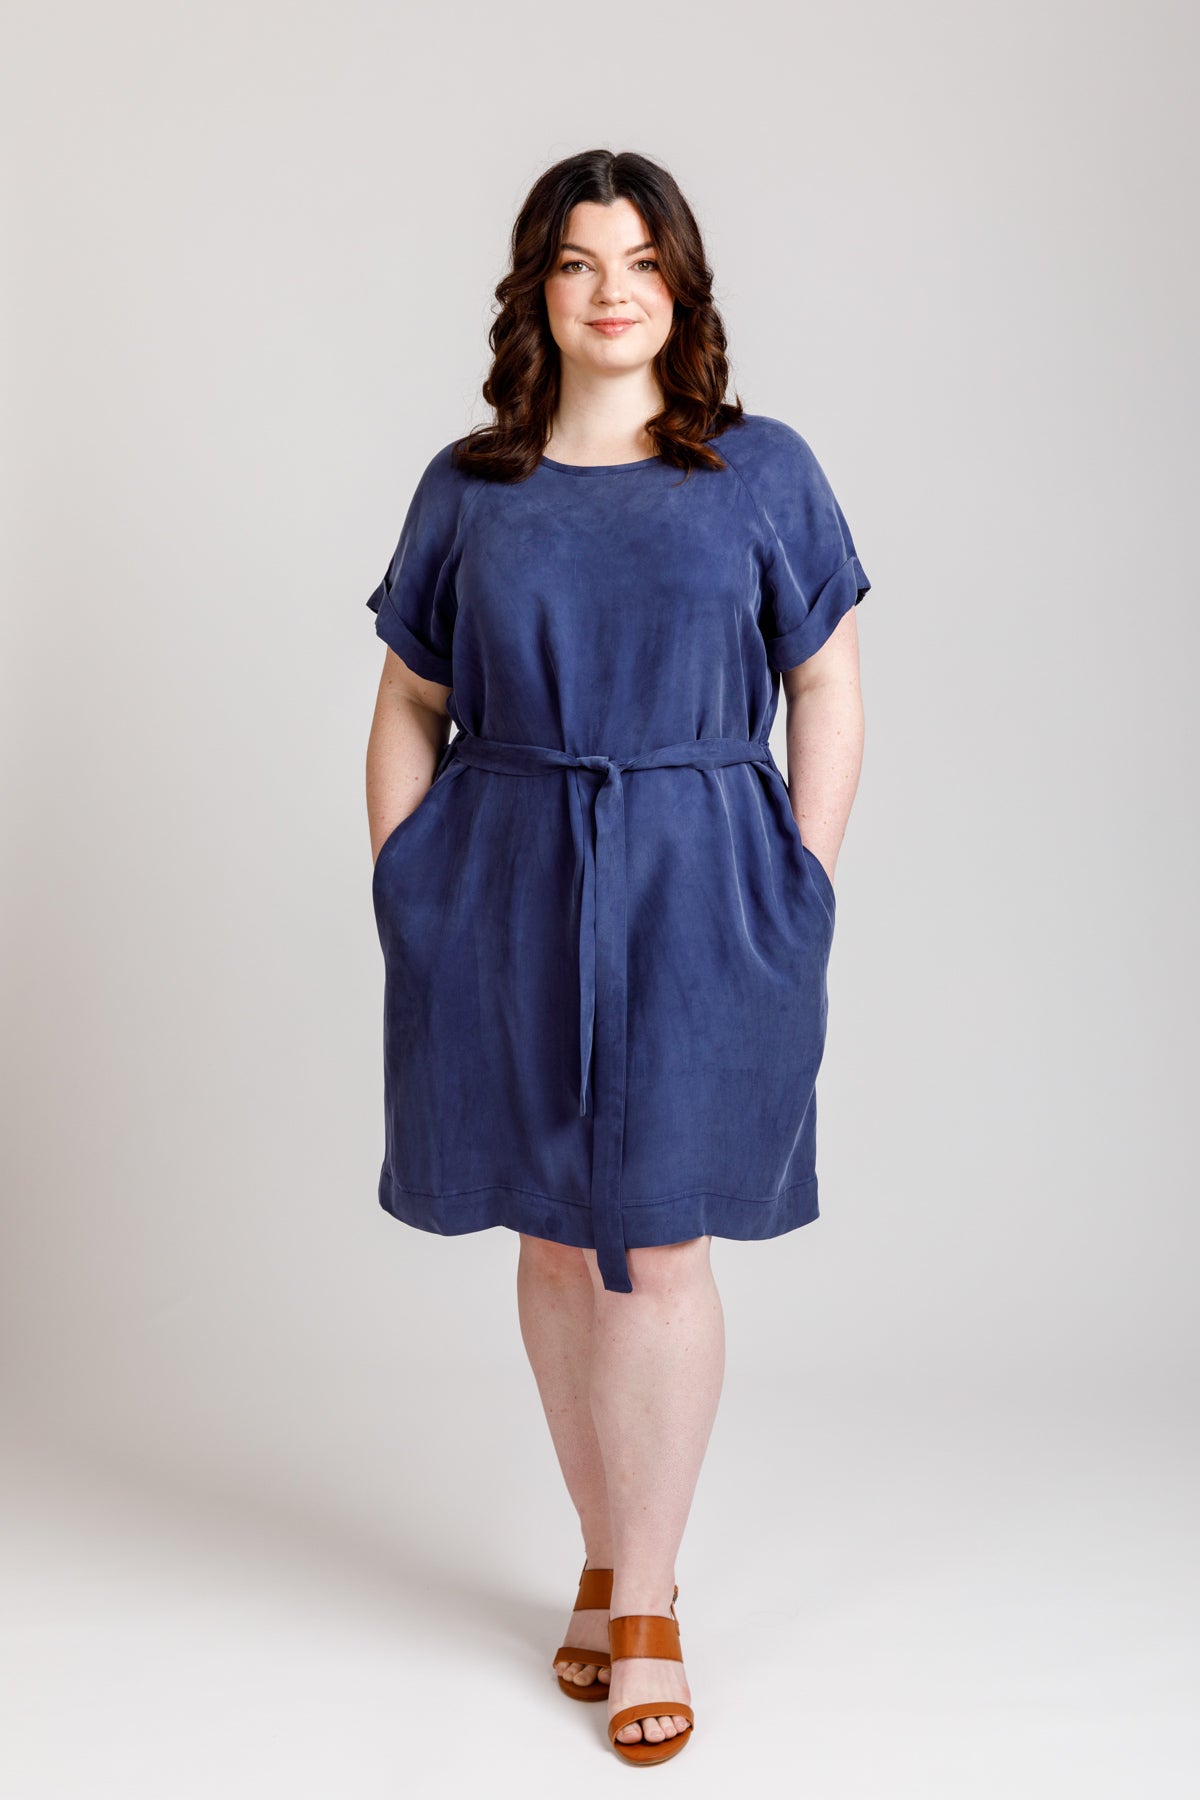 Megan Nielsen River Dress & Top | Harts Fabric